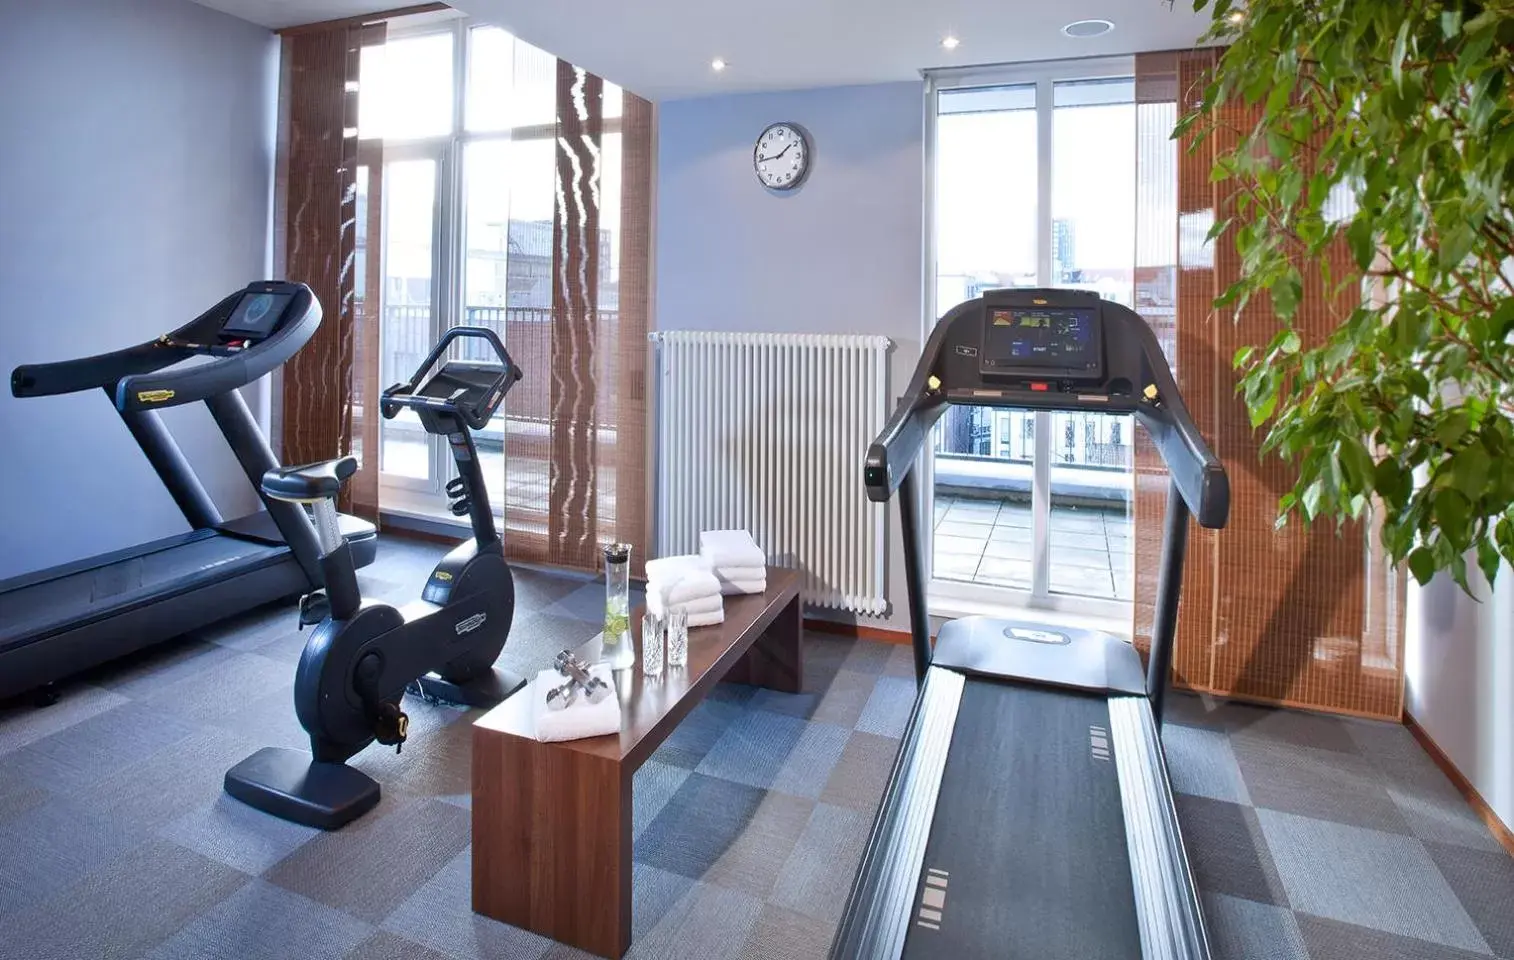 Fitness centre/facilities, Fitness Center/Facilities in Lindner Hotel Hamburg am Michel, part of JdV by Hyatt